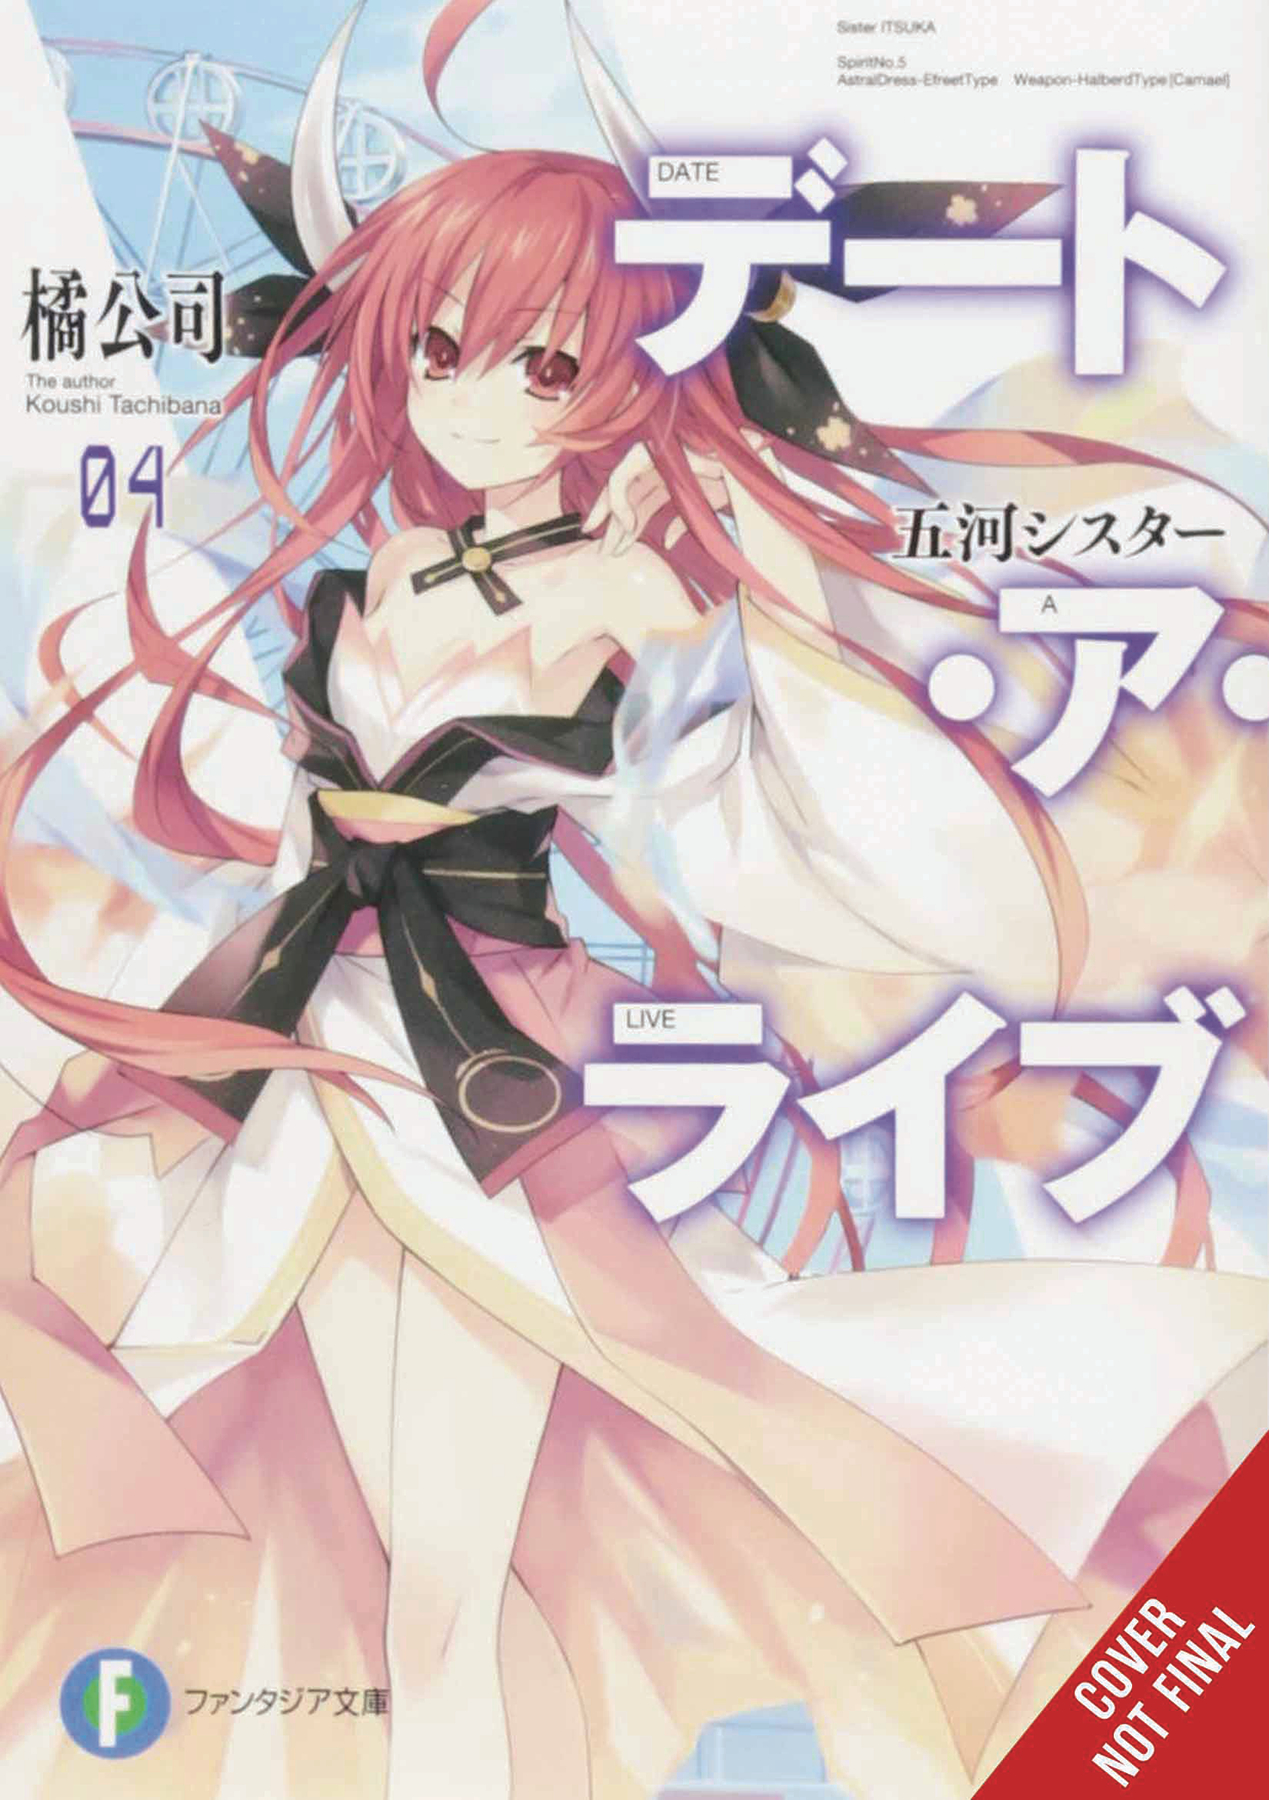 Date a Live Light Novel Volume 4 (Mature)